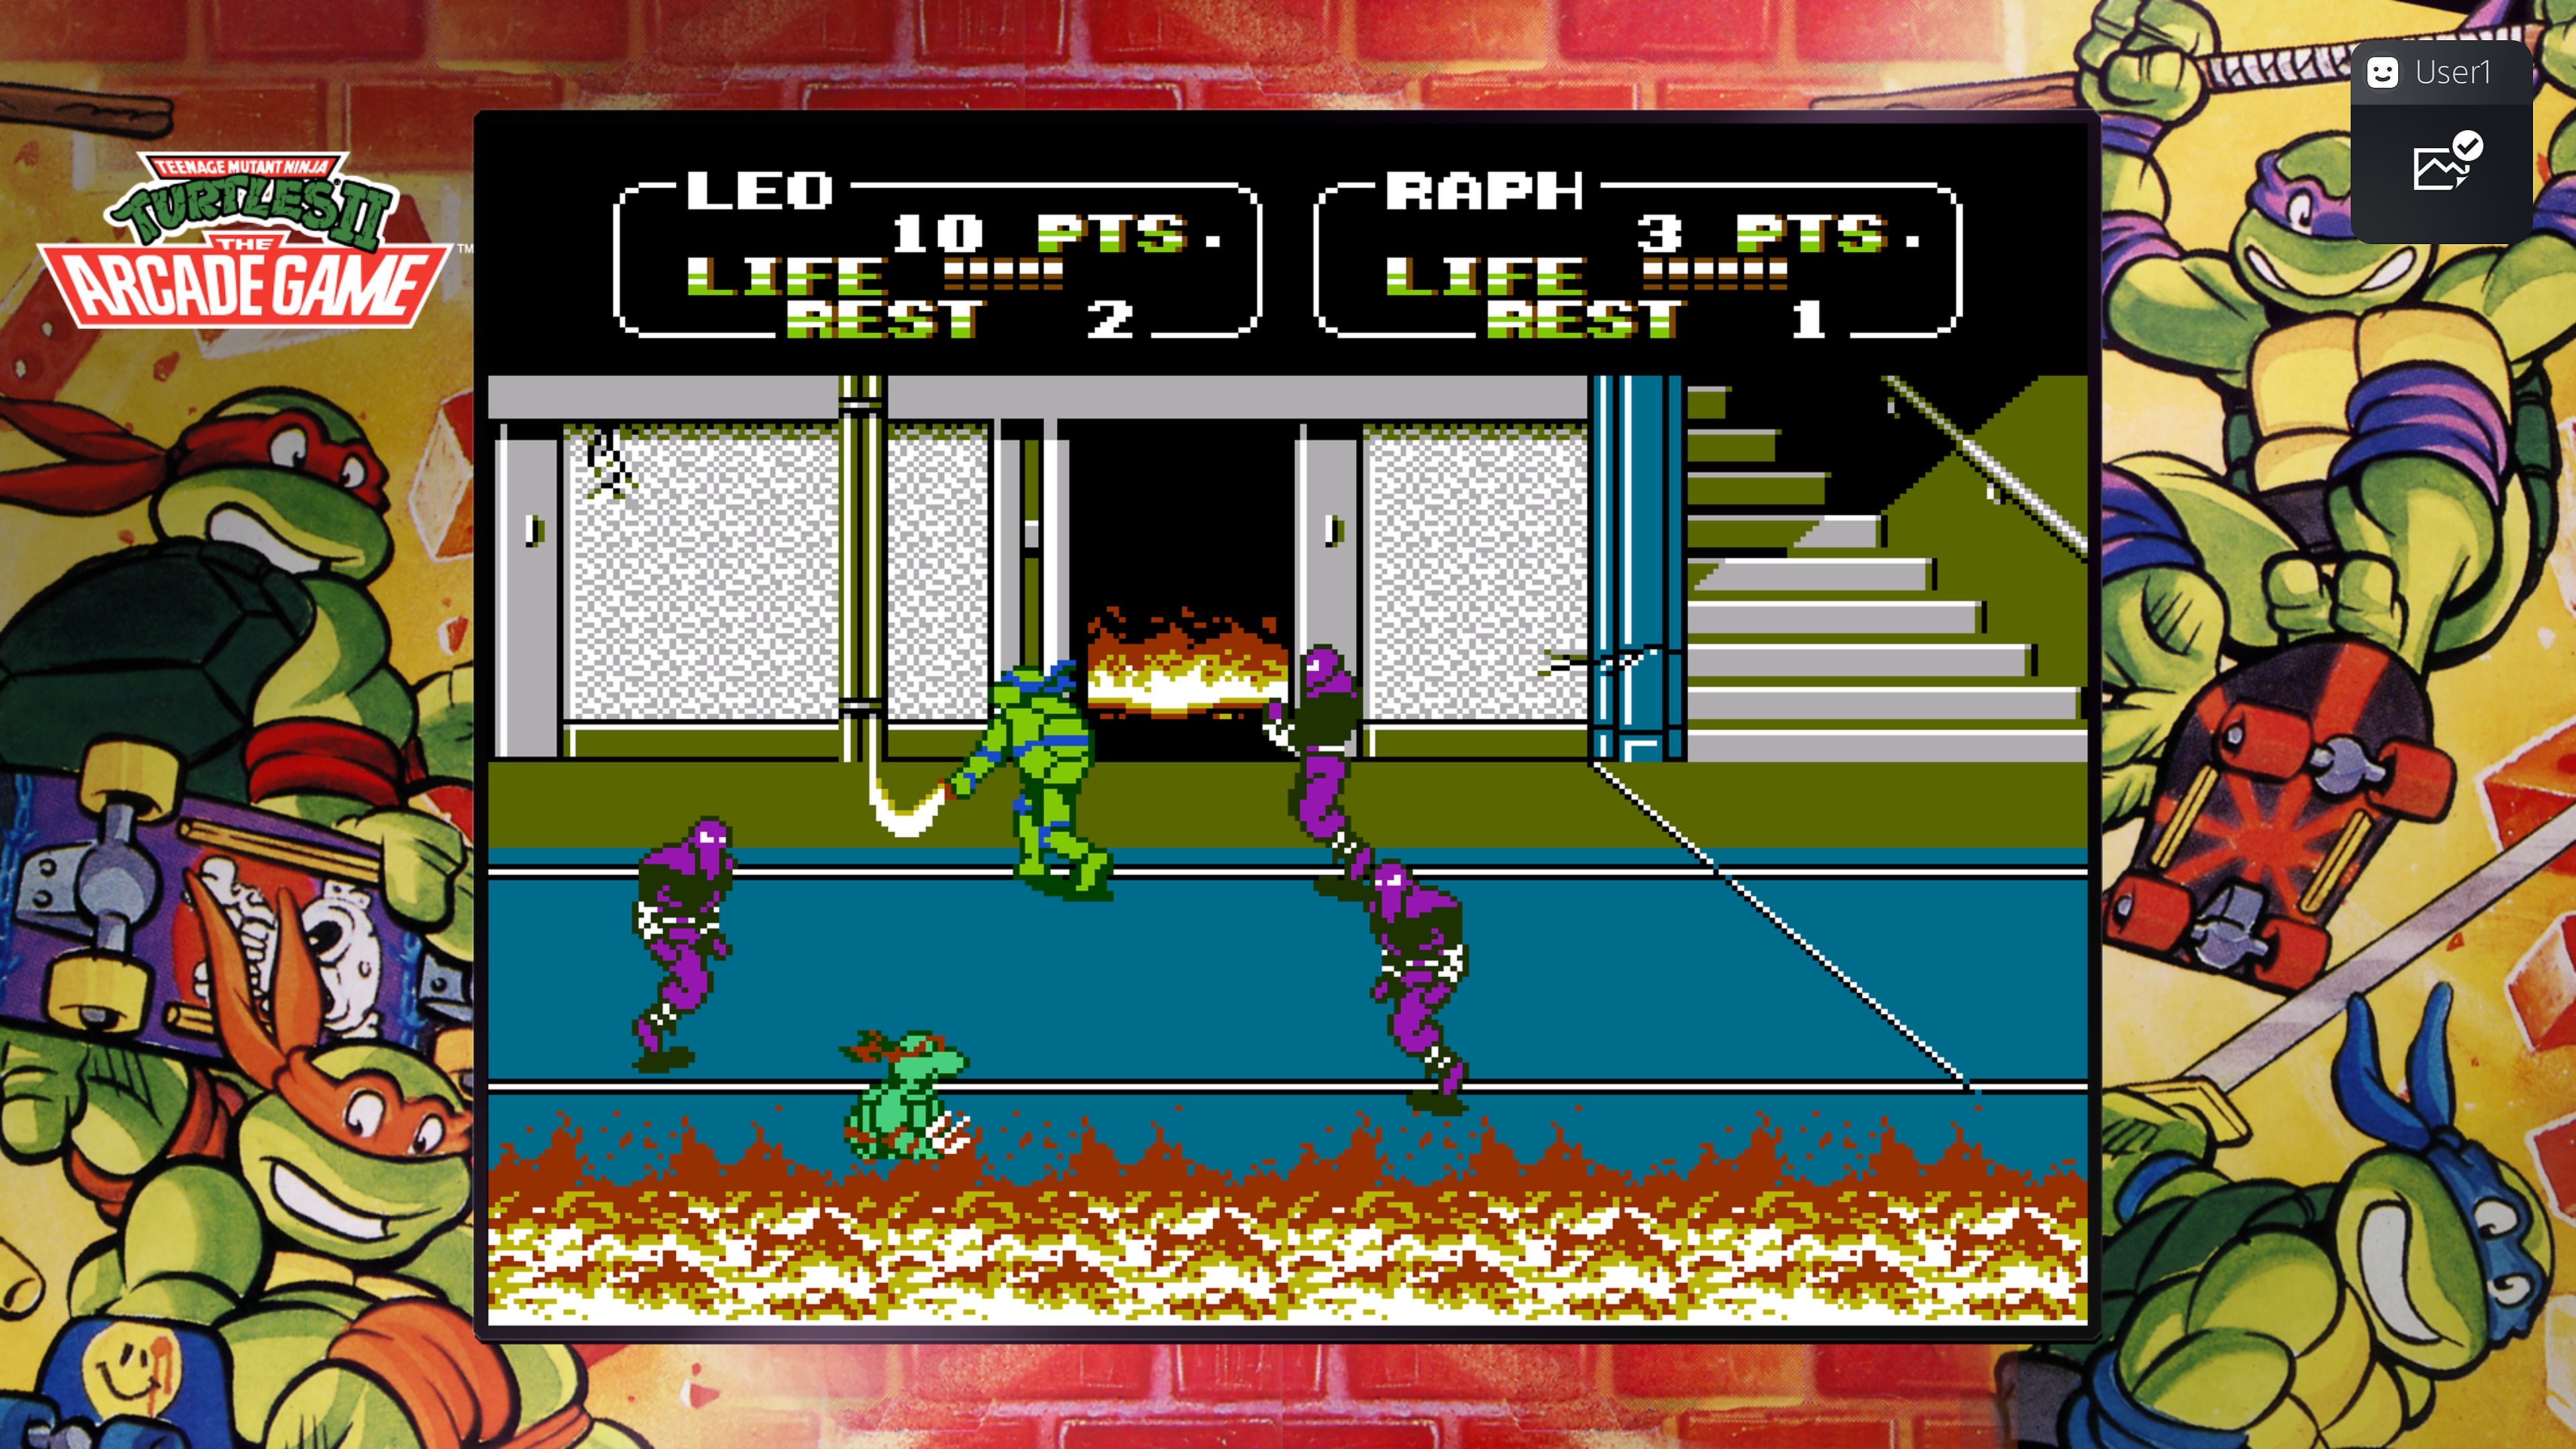 Captura de pantalla de Teenage Mutant Ninja Turtles Collection - The Arcade Game en la que Leonardo y Raphael pelean contra el Clan del Pie